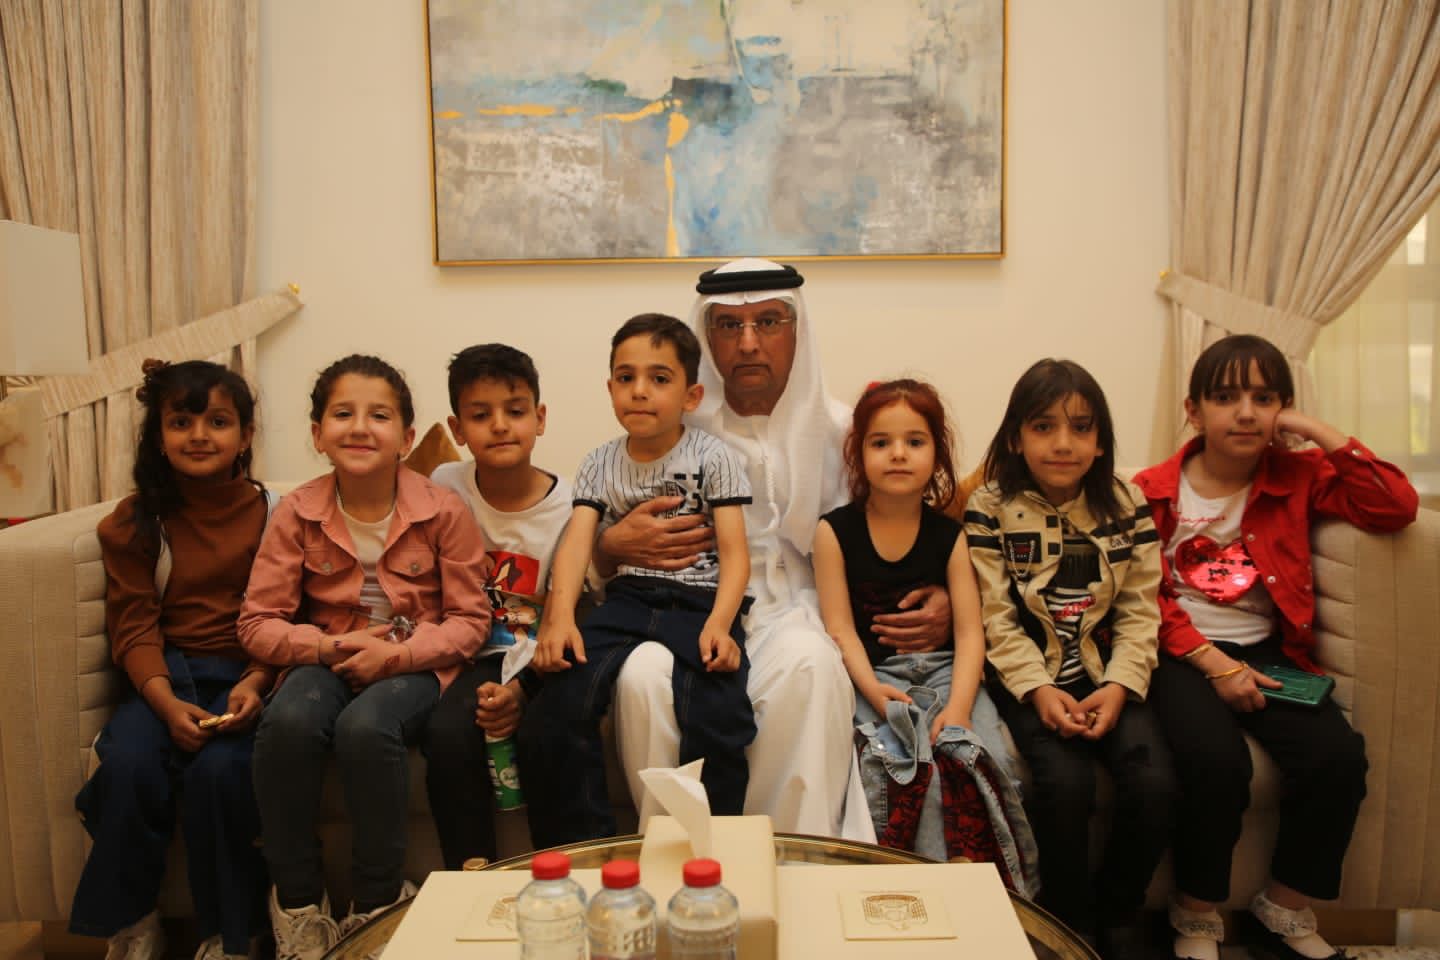 حتى أطفال الأردن شاركوا في تقديم واجب العزاء برحيل فقيد الأمة الشيخ خليفة